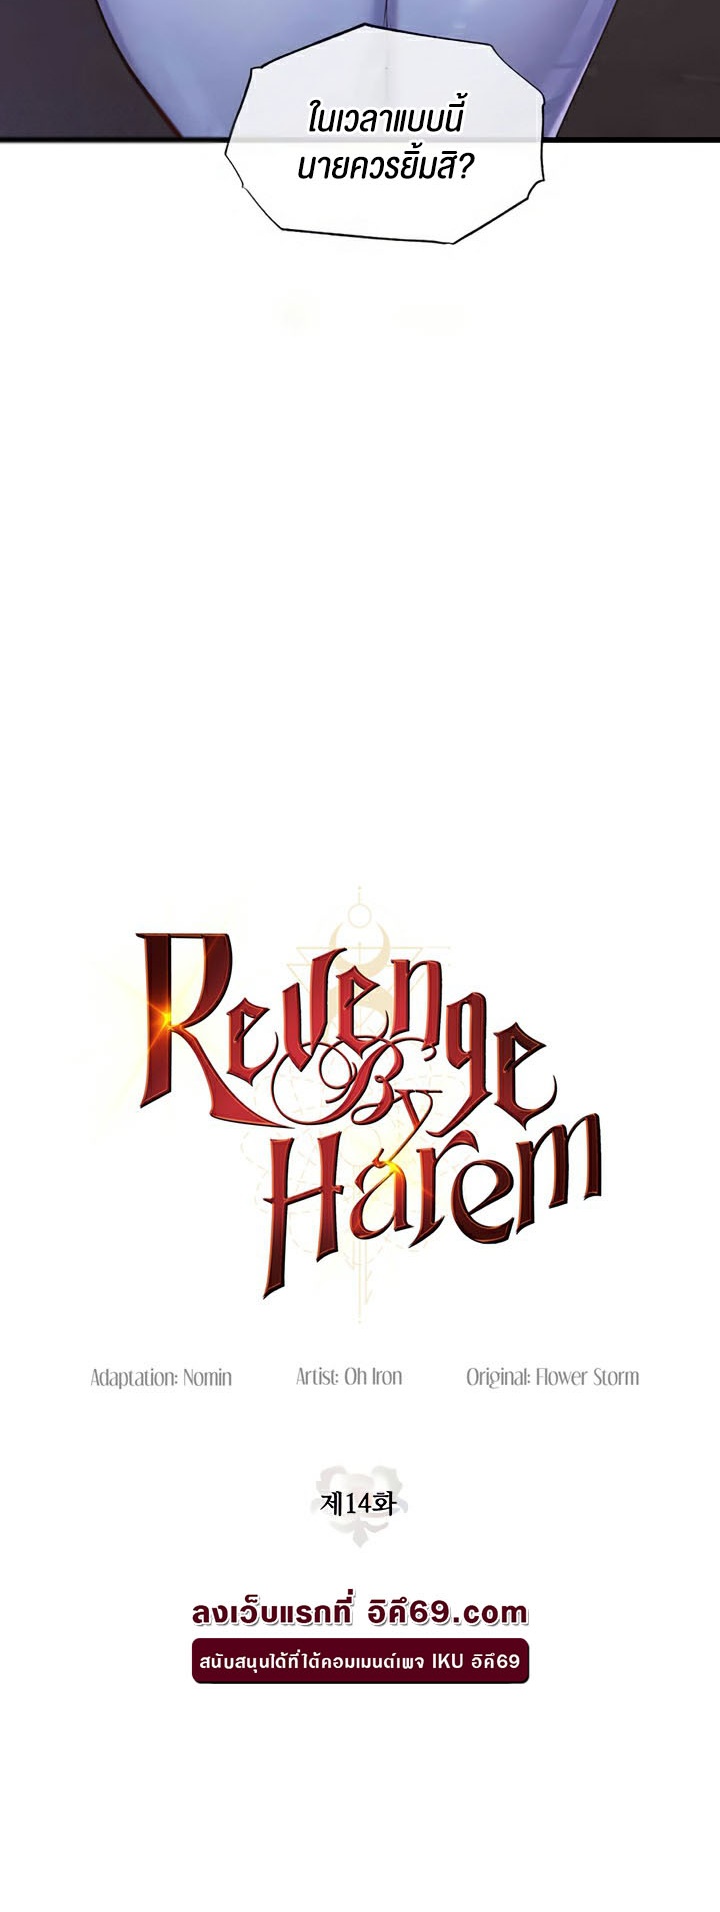 อ่านโดจิน เรื่อง Revenge By Harem 16 04